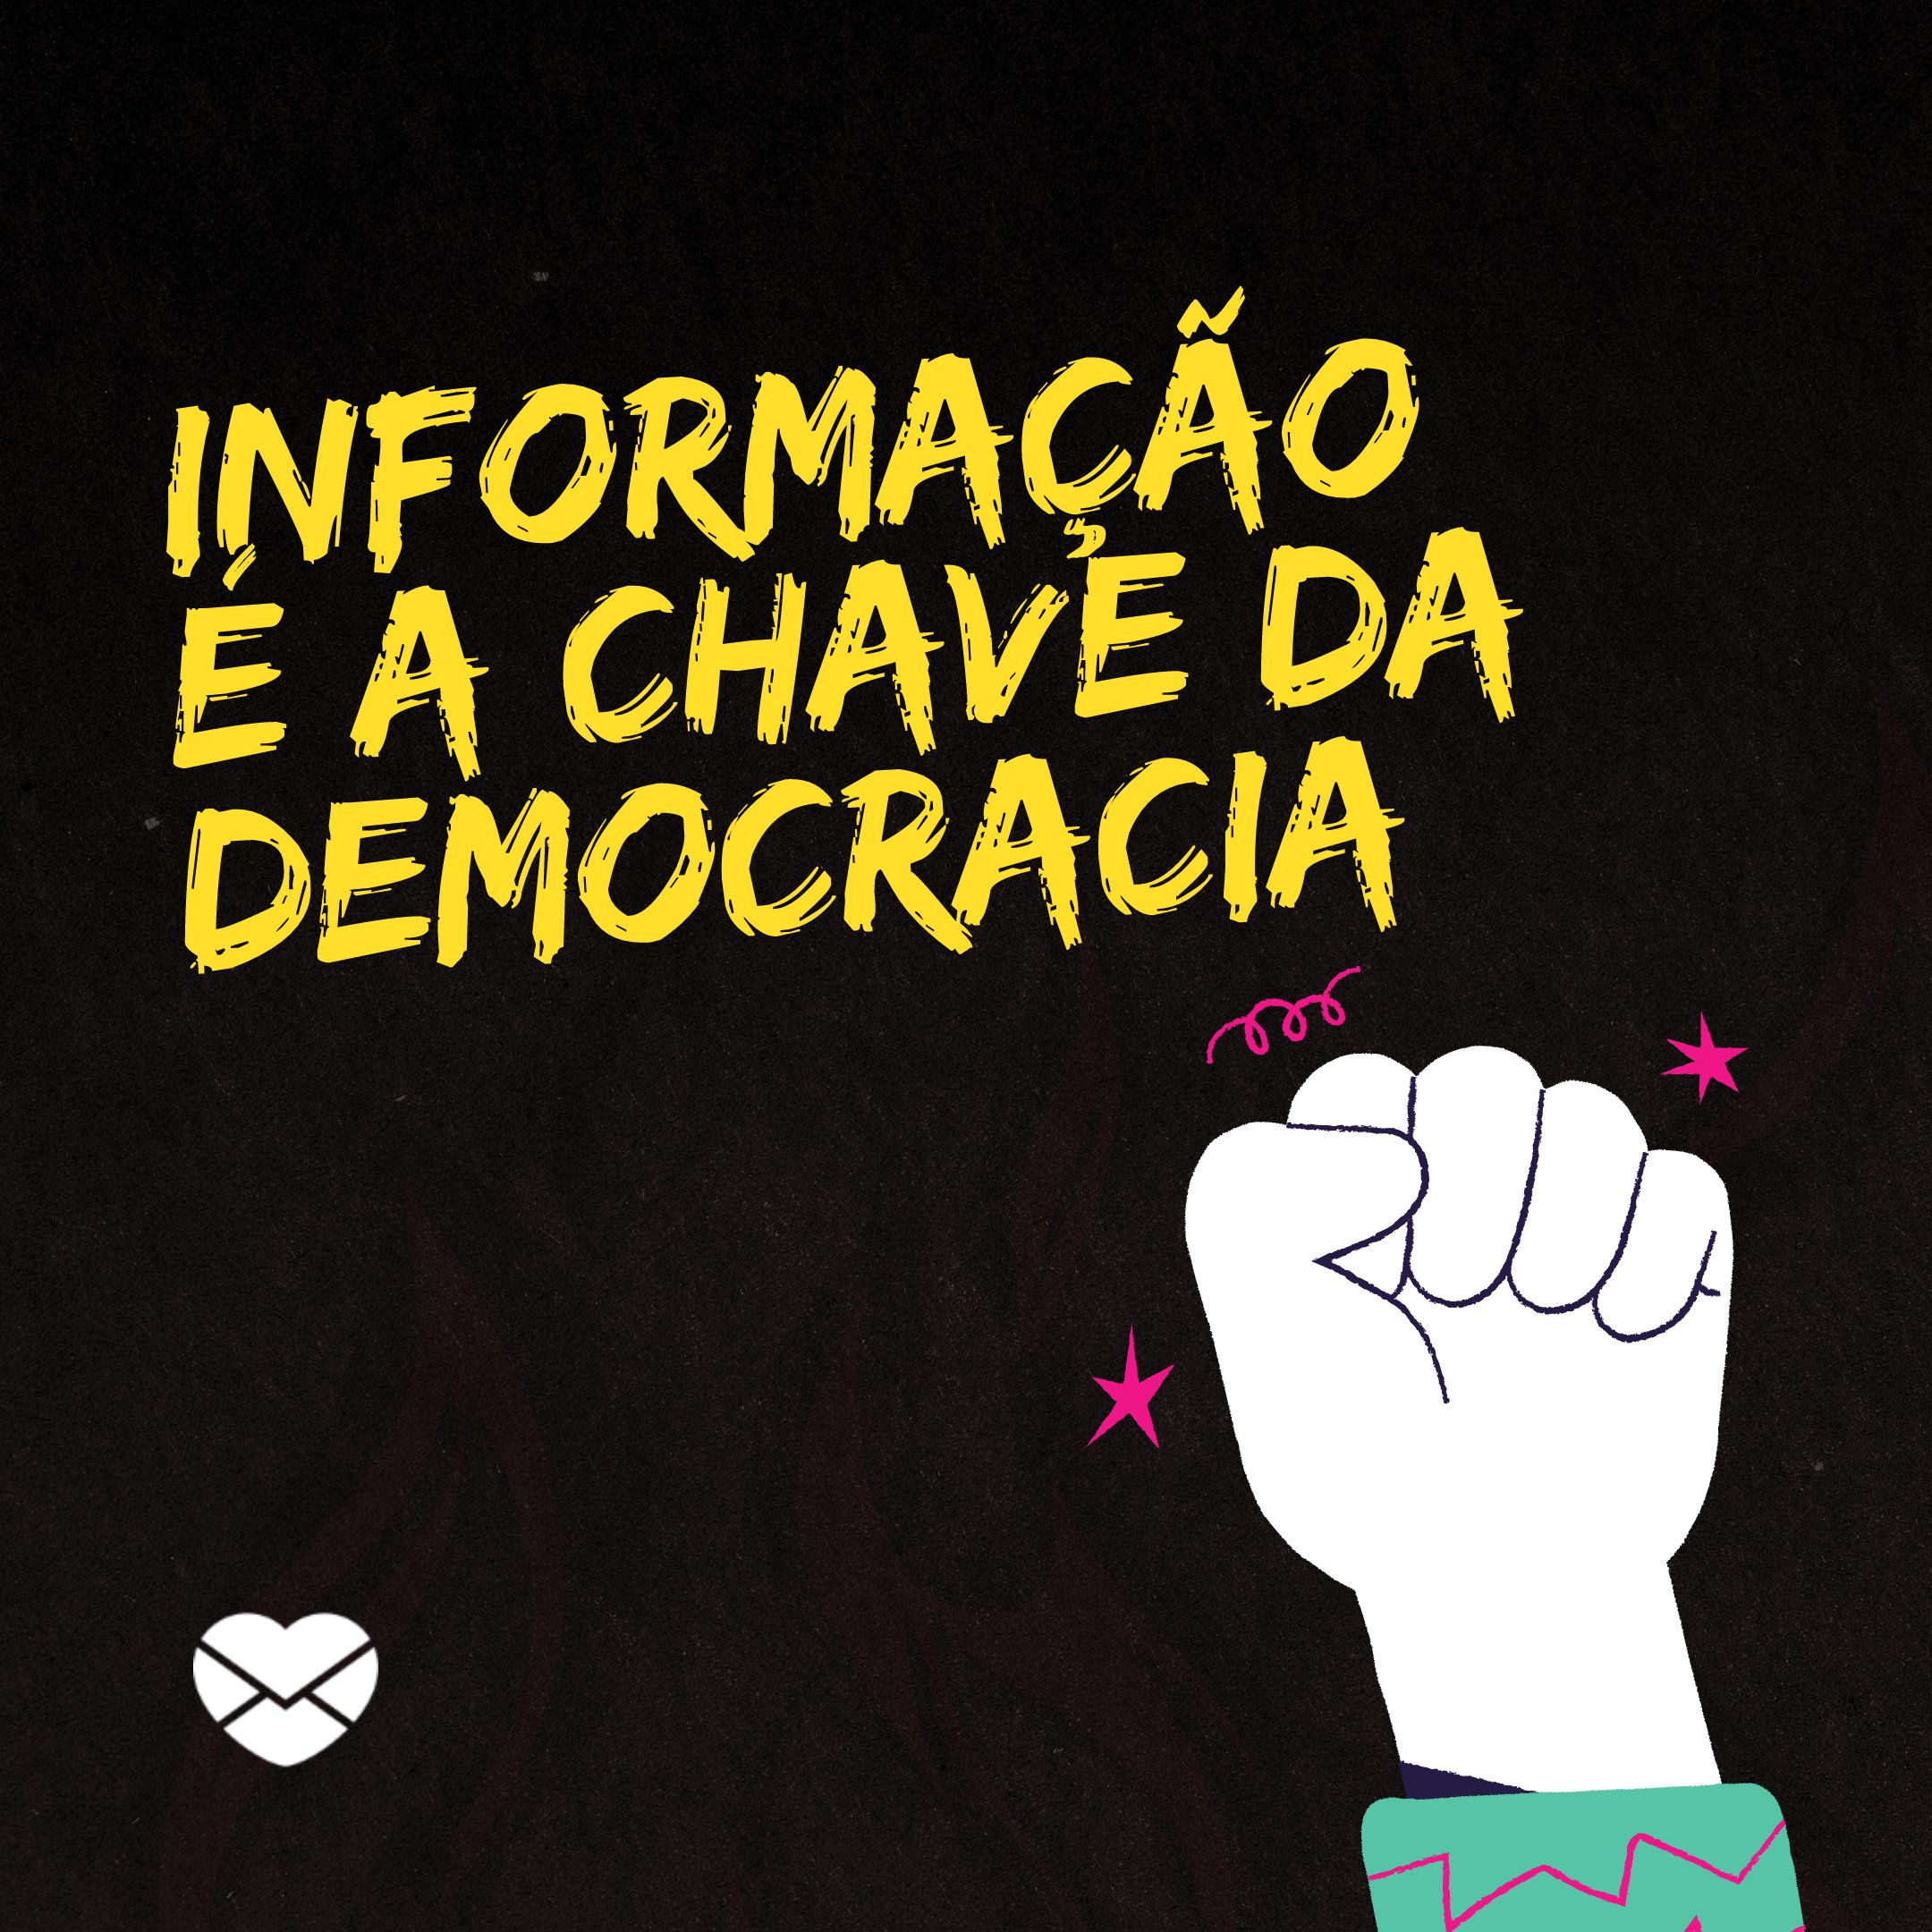 'Informação é a chave da democracia' - Mensagens de defesa à democracia